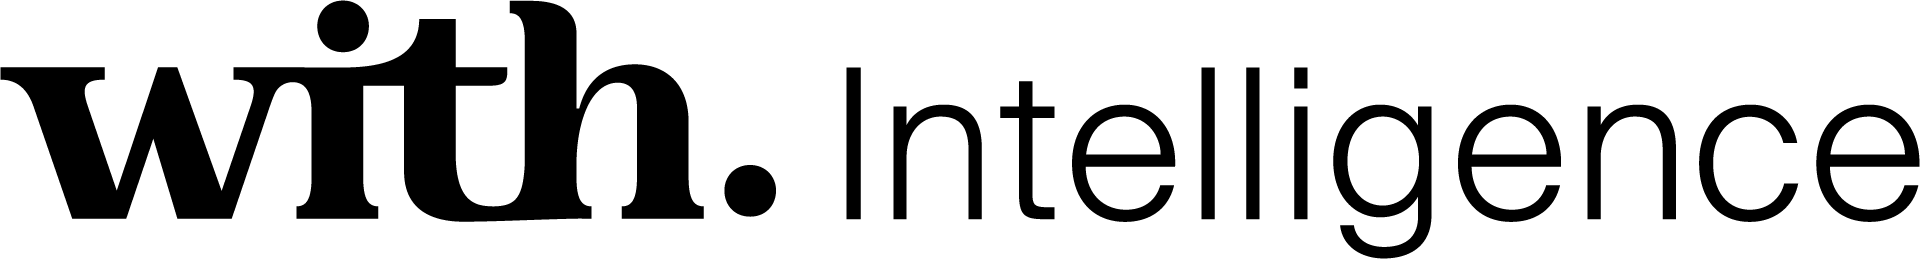 With Intelligence horizontal logo black